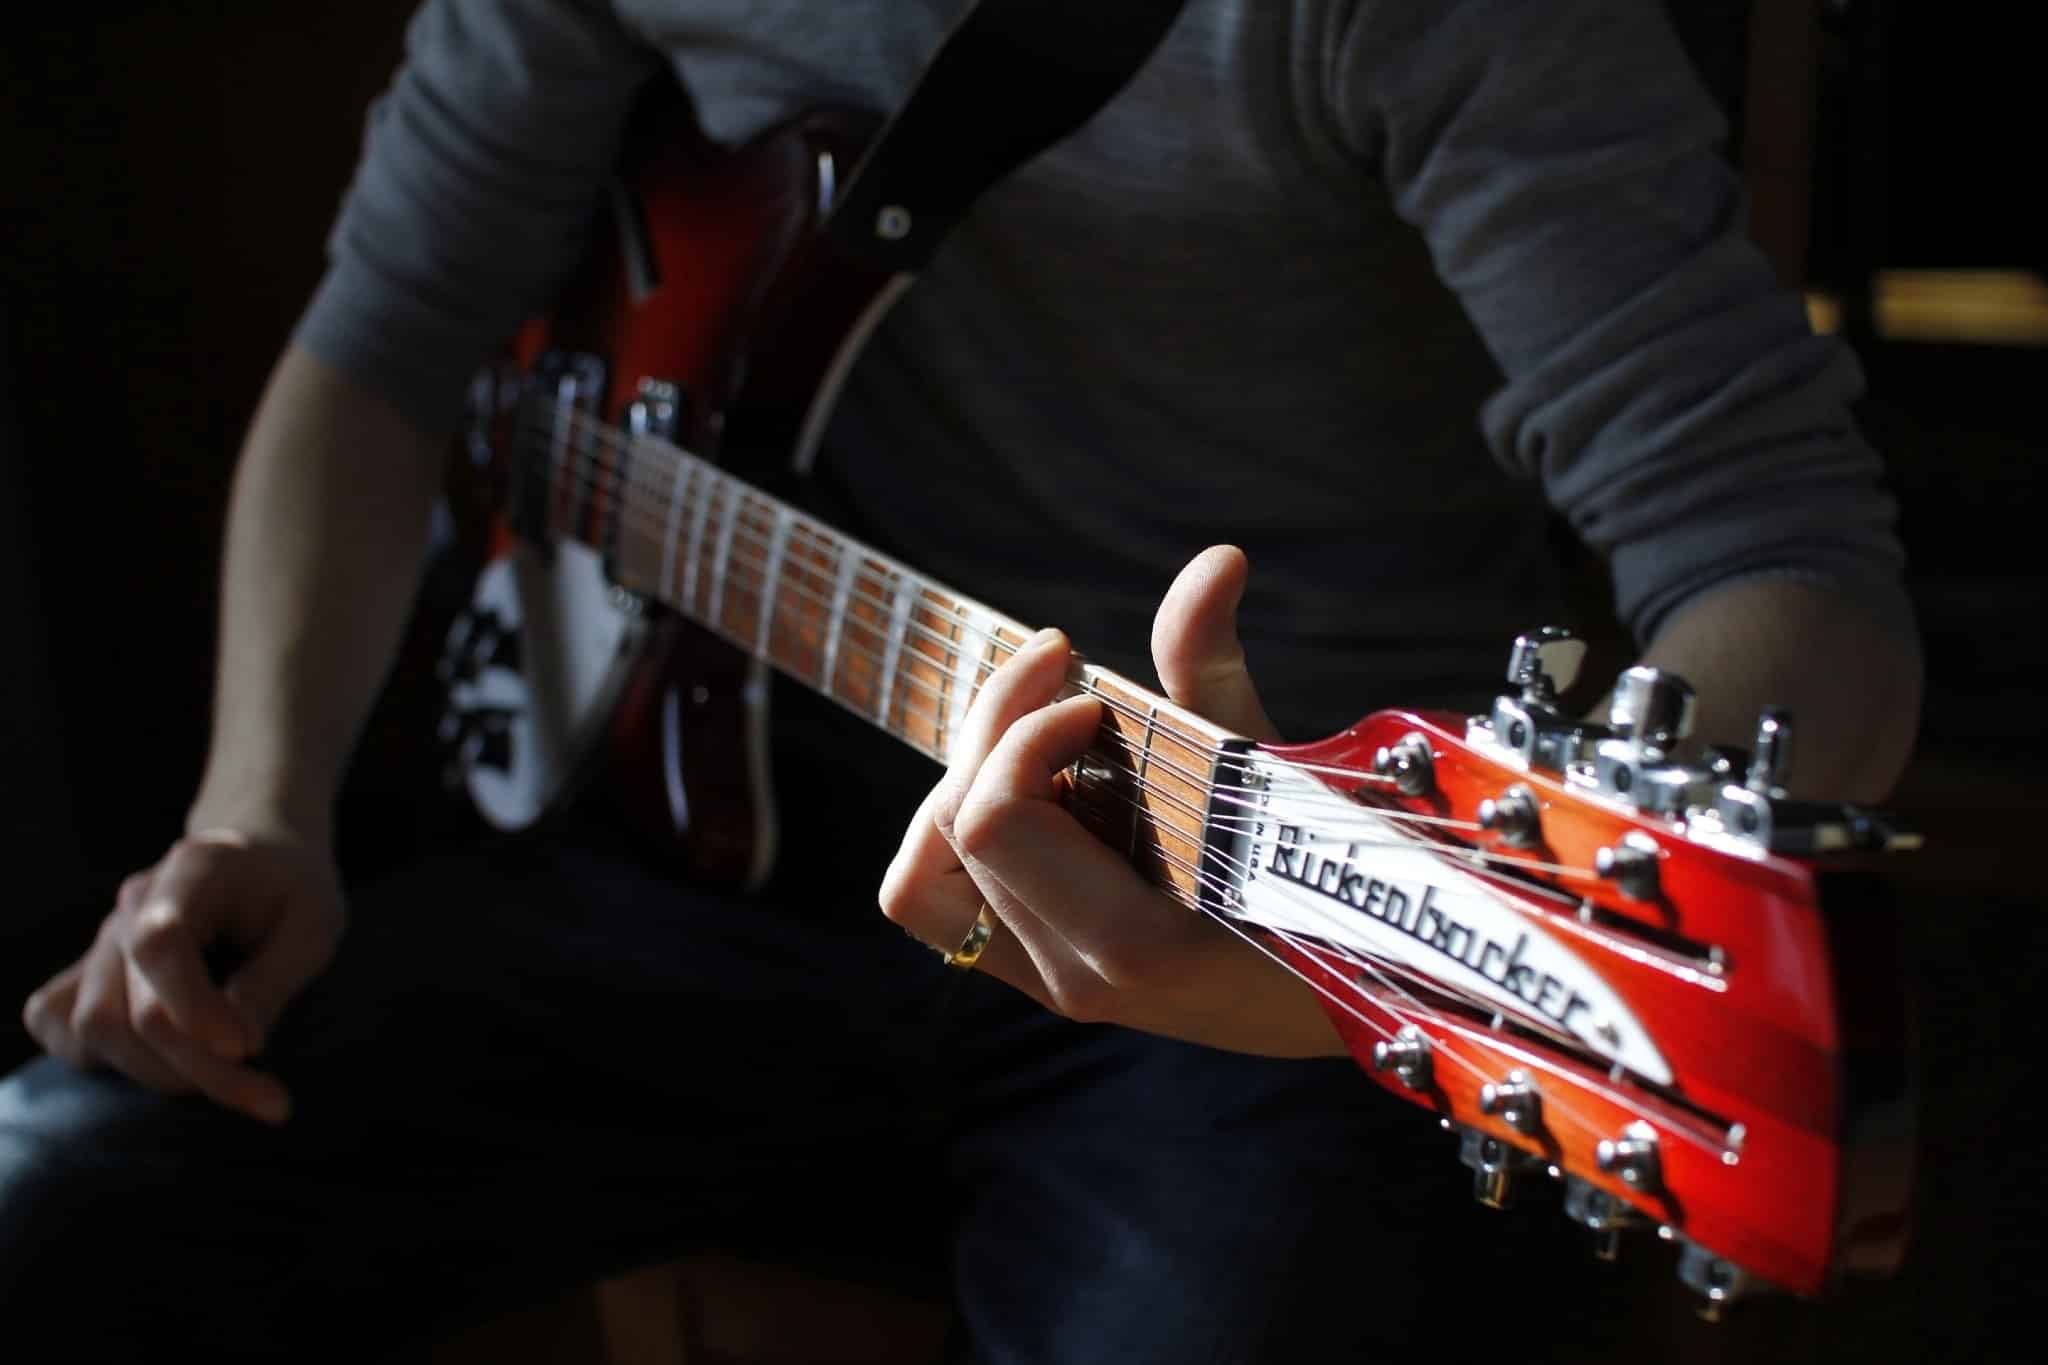 A guitarist holding a Rickenbacker